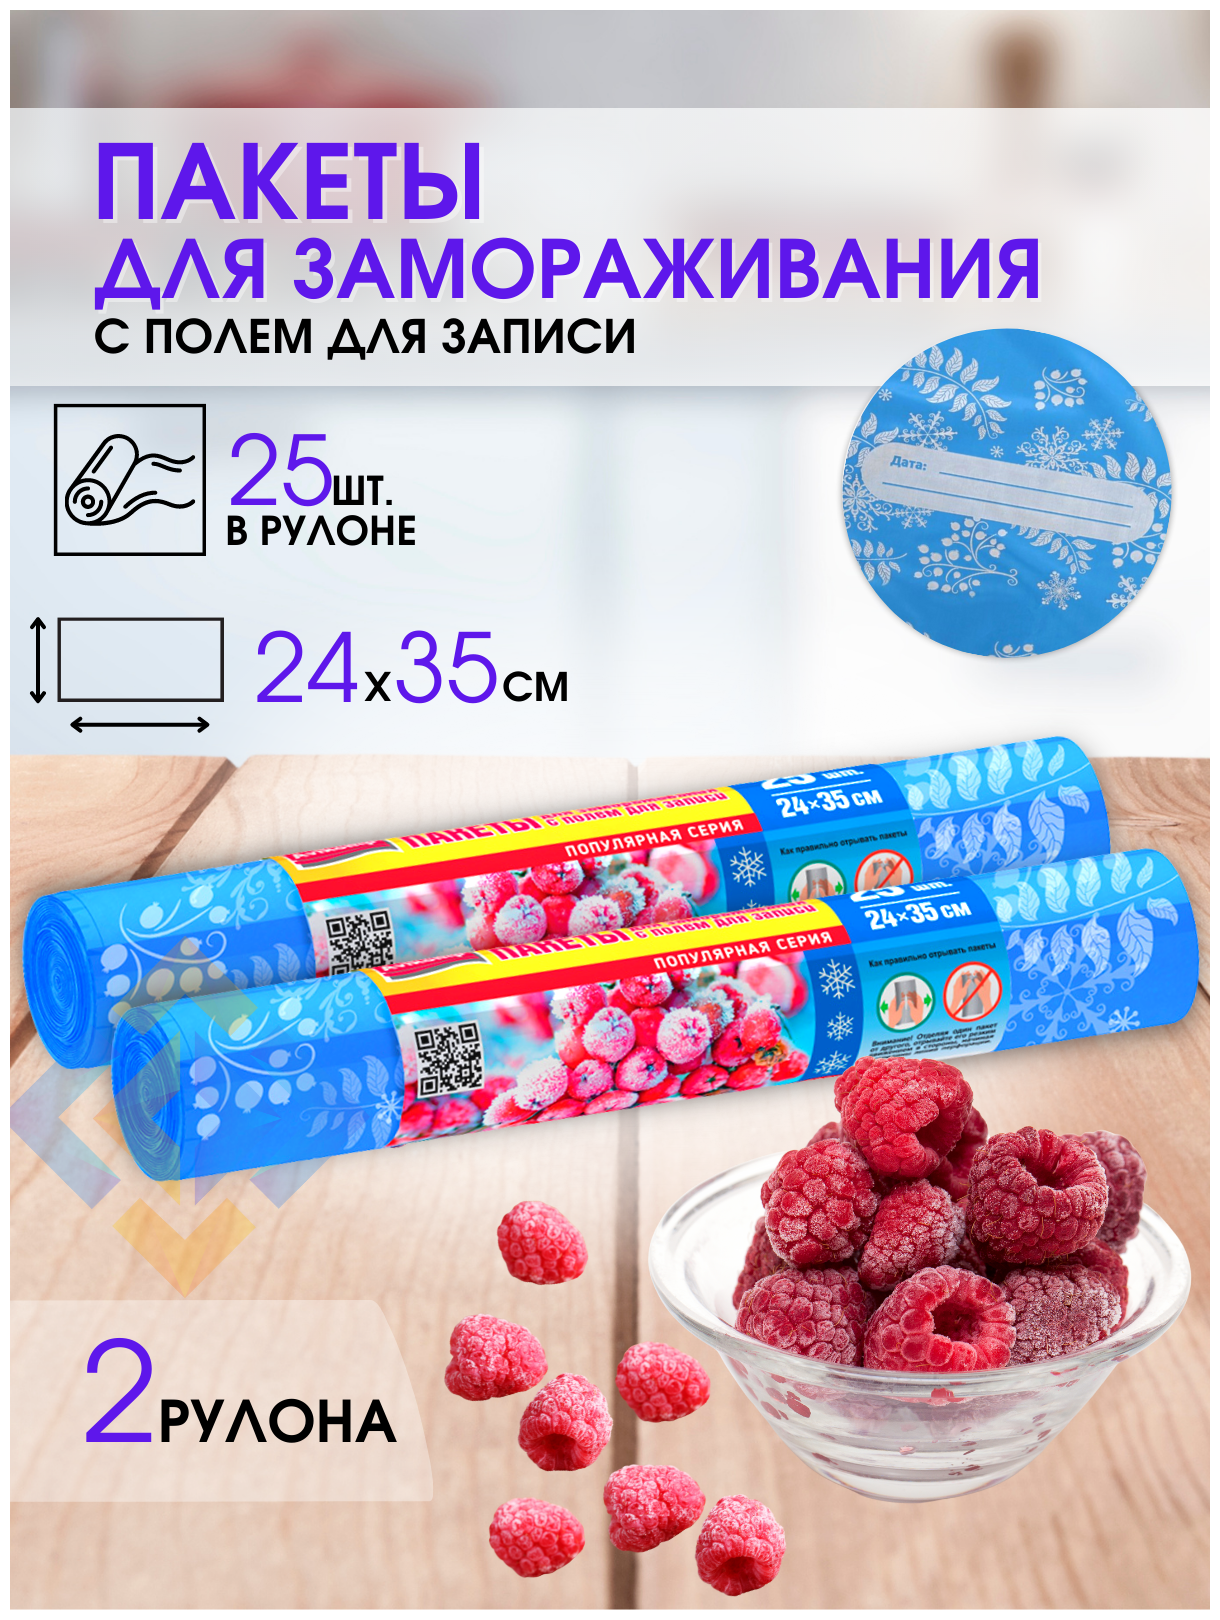 Пакеты для заморозки ягод, фруктов, овощей, мяса полиэтиленовые одноразовые пакеты 25 шт с местом для надписей, 2 рулона